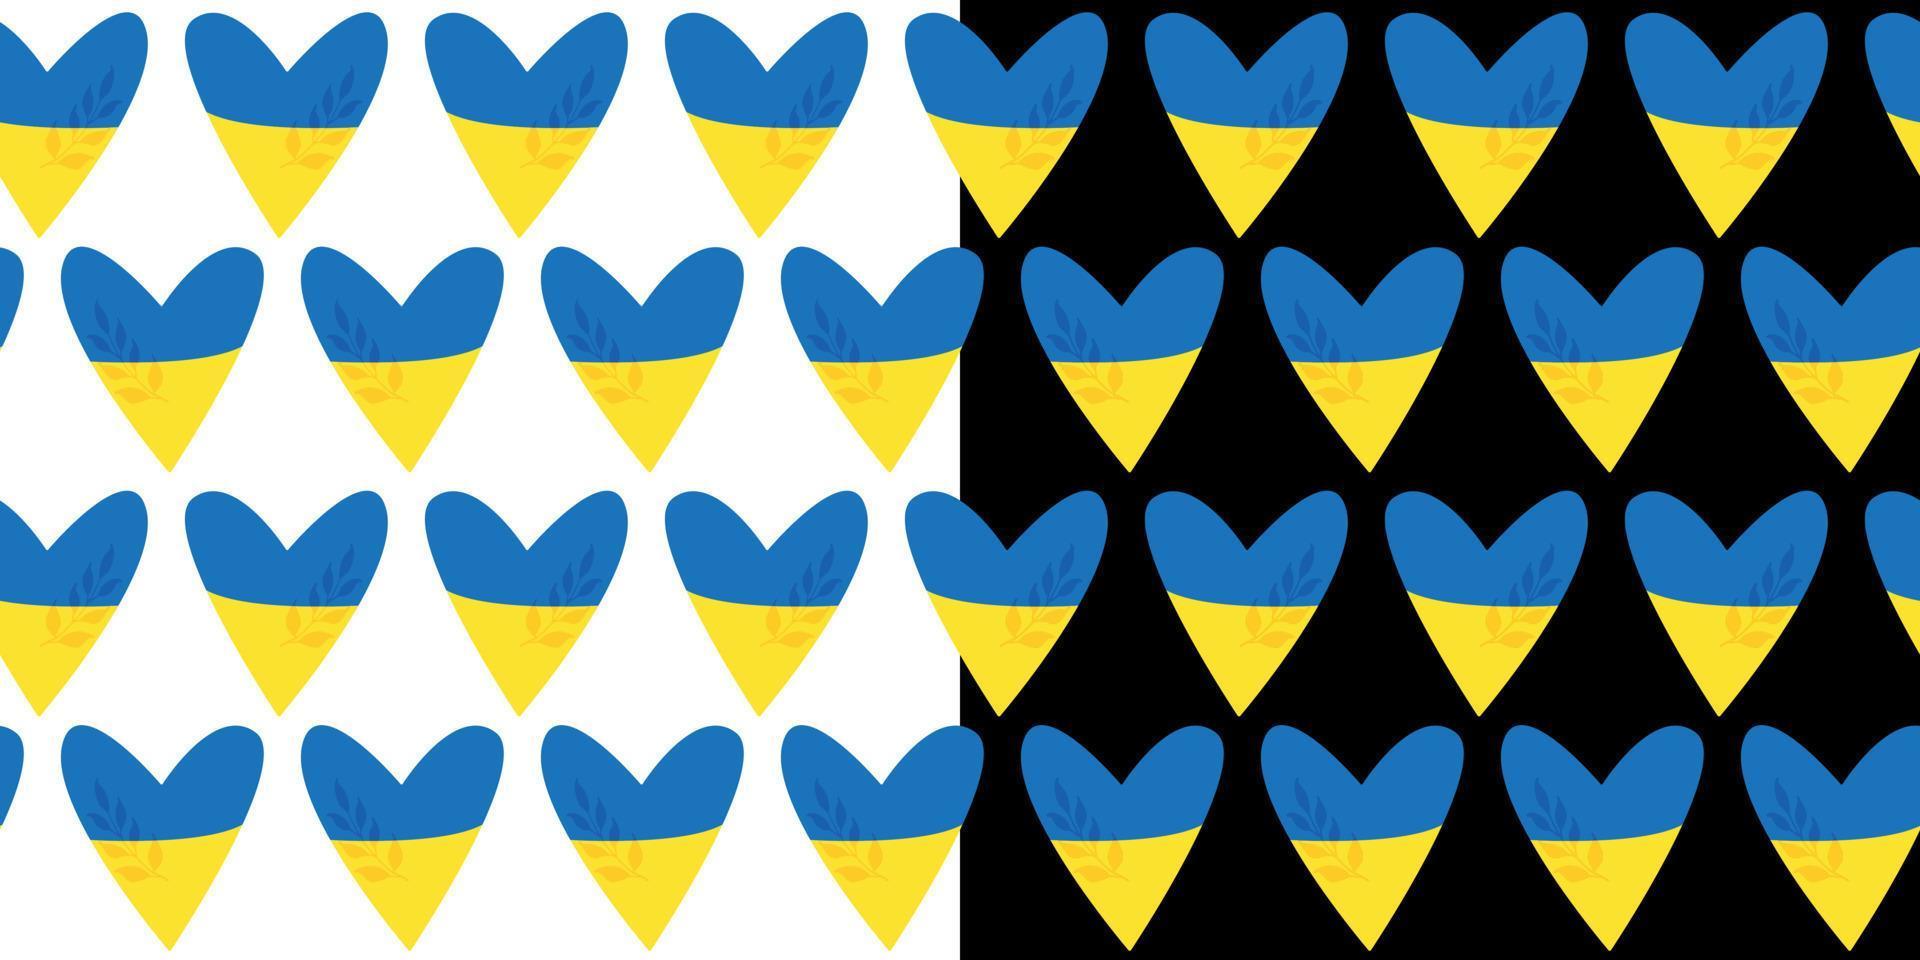 nahtlose musterherzen der ukraine. Gelb-blaue Flagge der Ukraine. einfaches Wiederholungsmuster. Vektor-Illustration. vektor